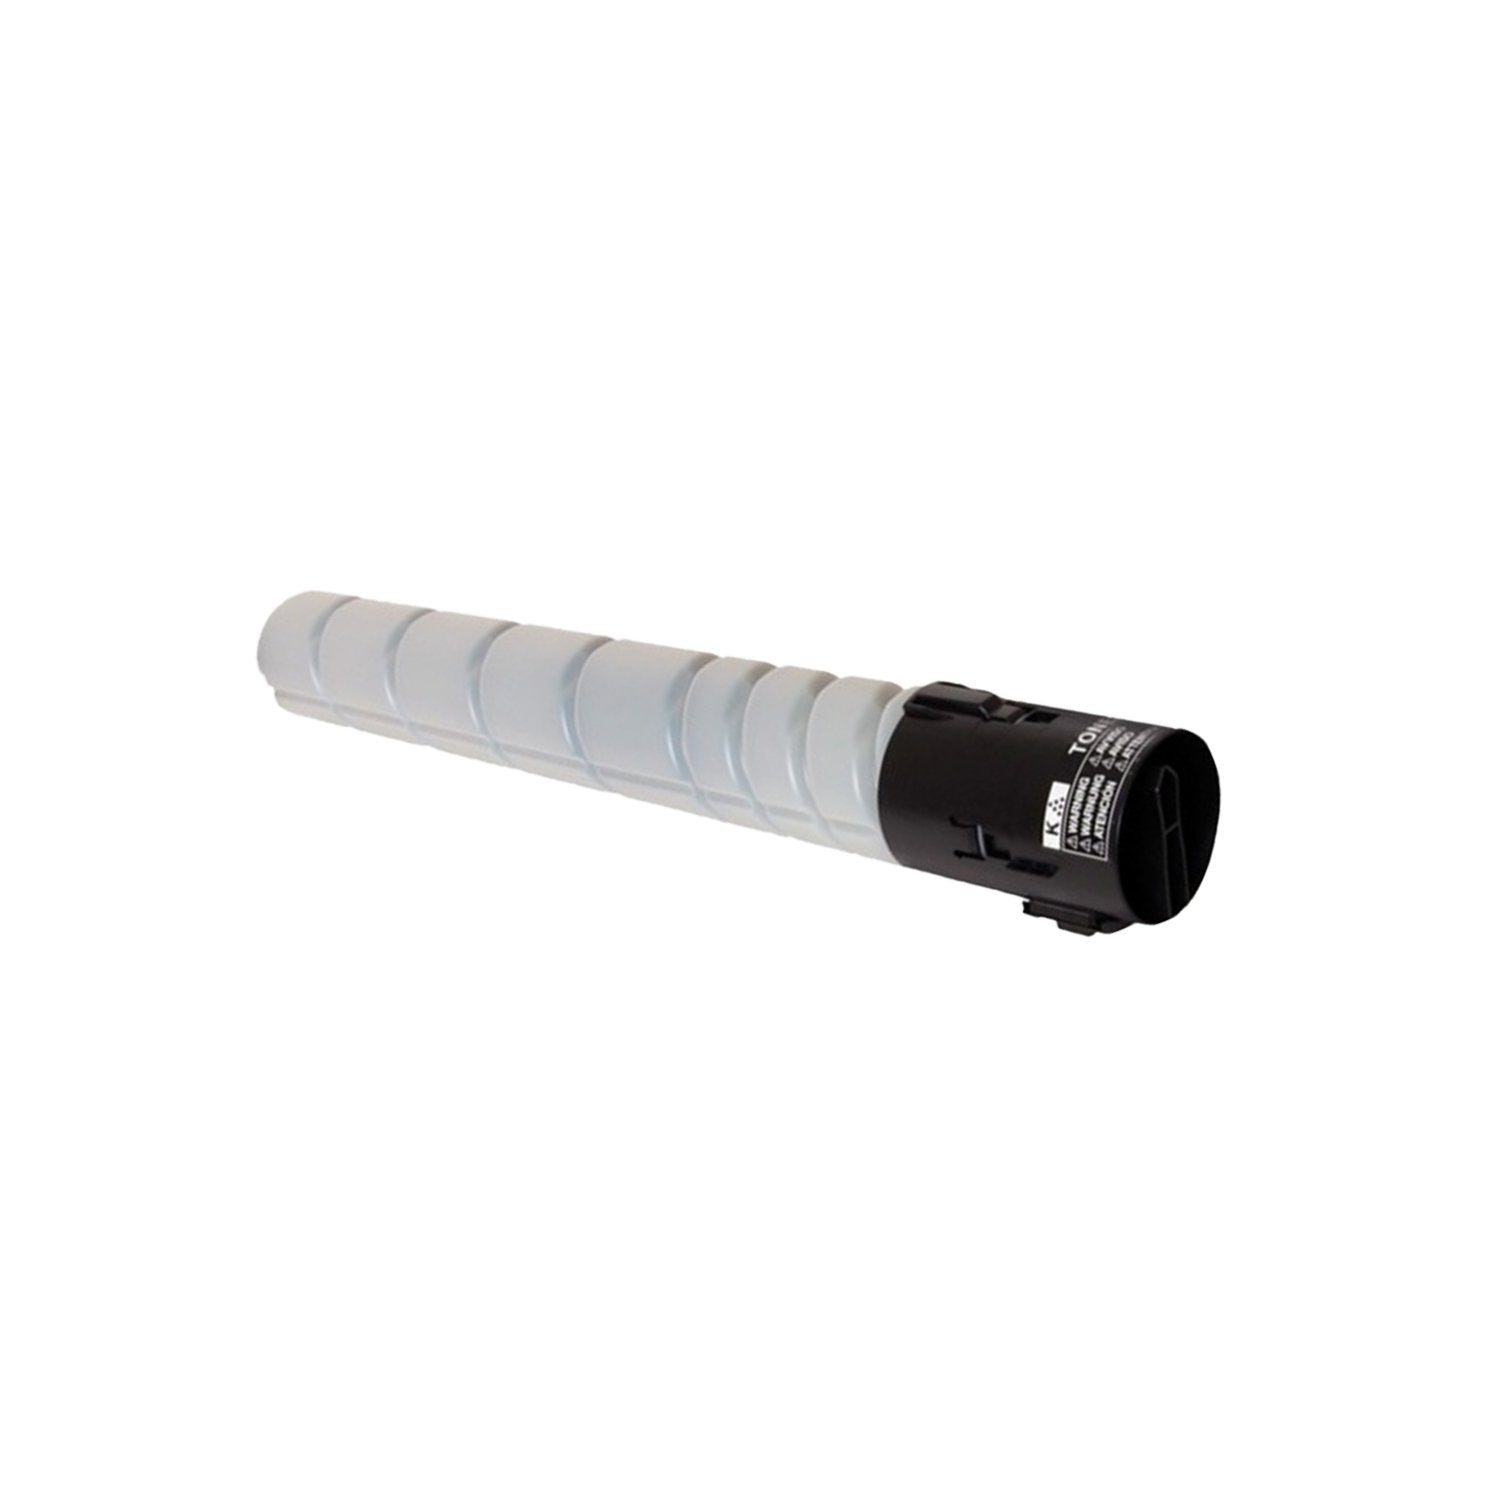 Absolute Toner Compatible Konica Minolta (2300B) Black Toner Cartridge | Absolute Toner Minolta Toner Cartridges